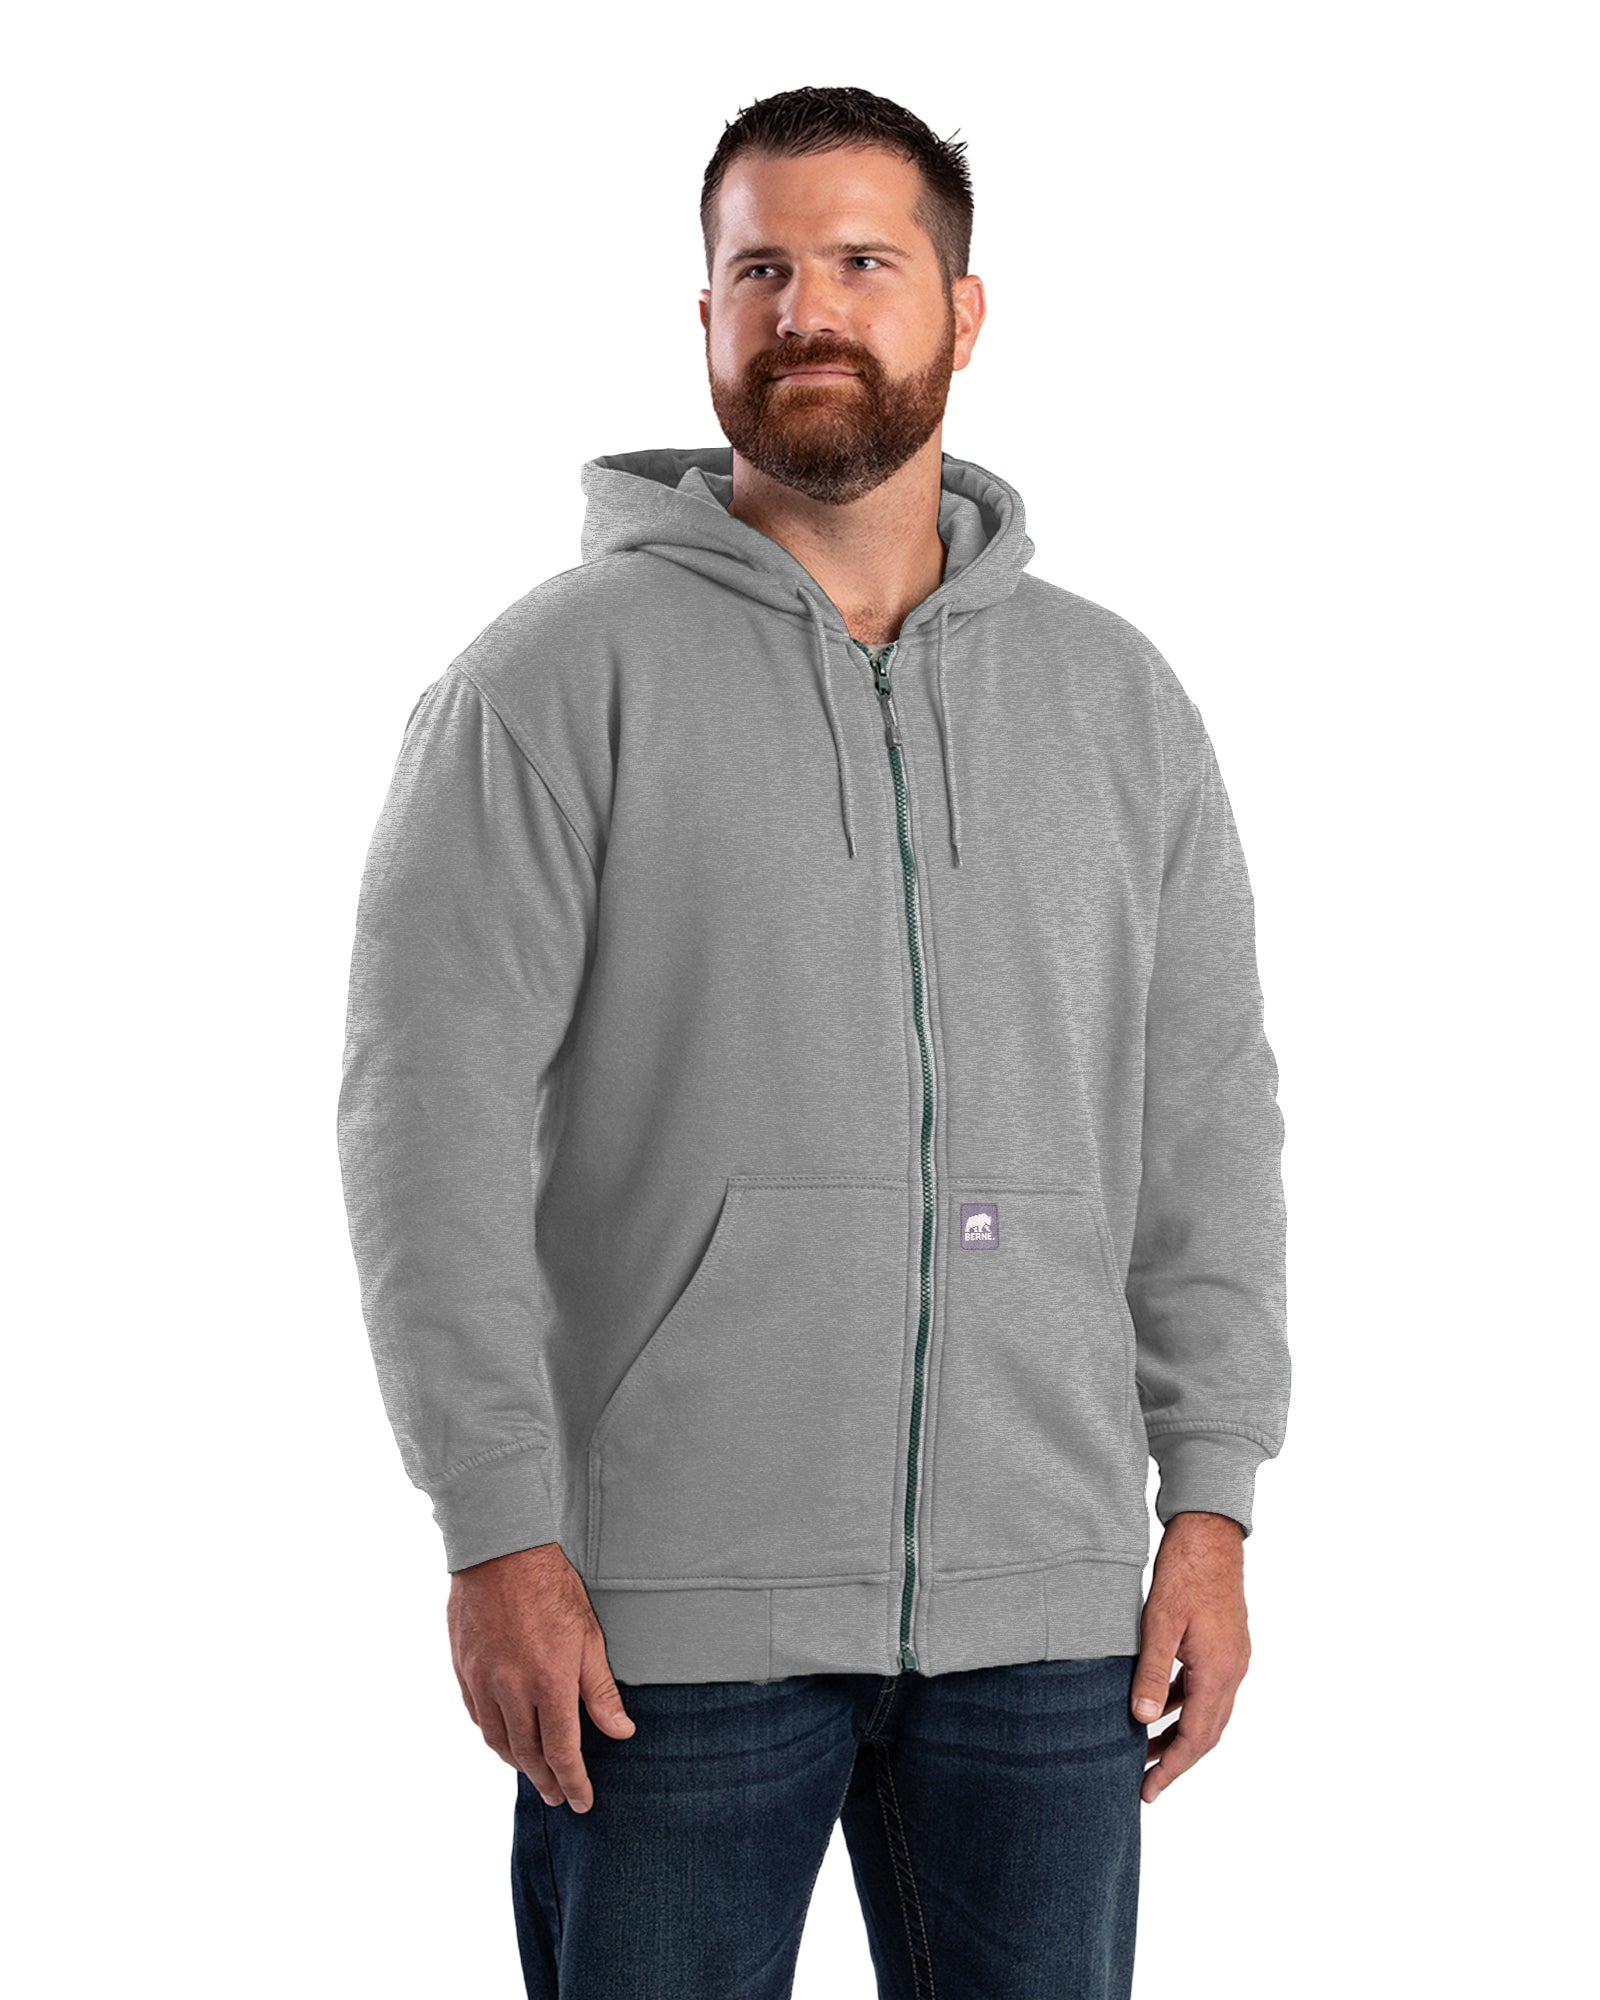 Men's Thermal Lined Zip-Front Hooded Sweatshirt